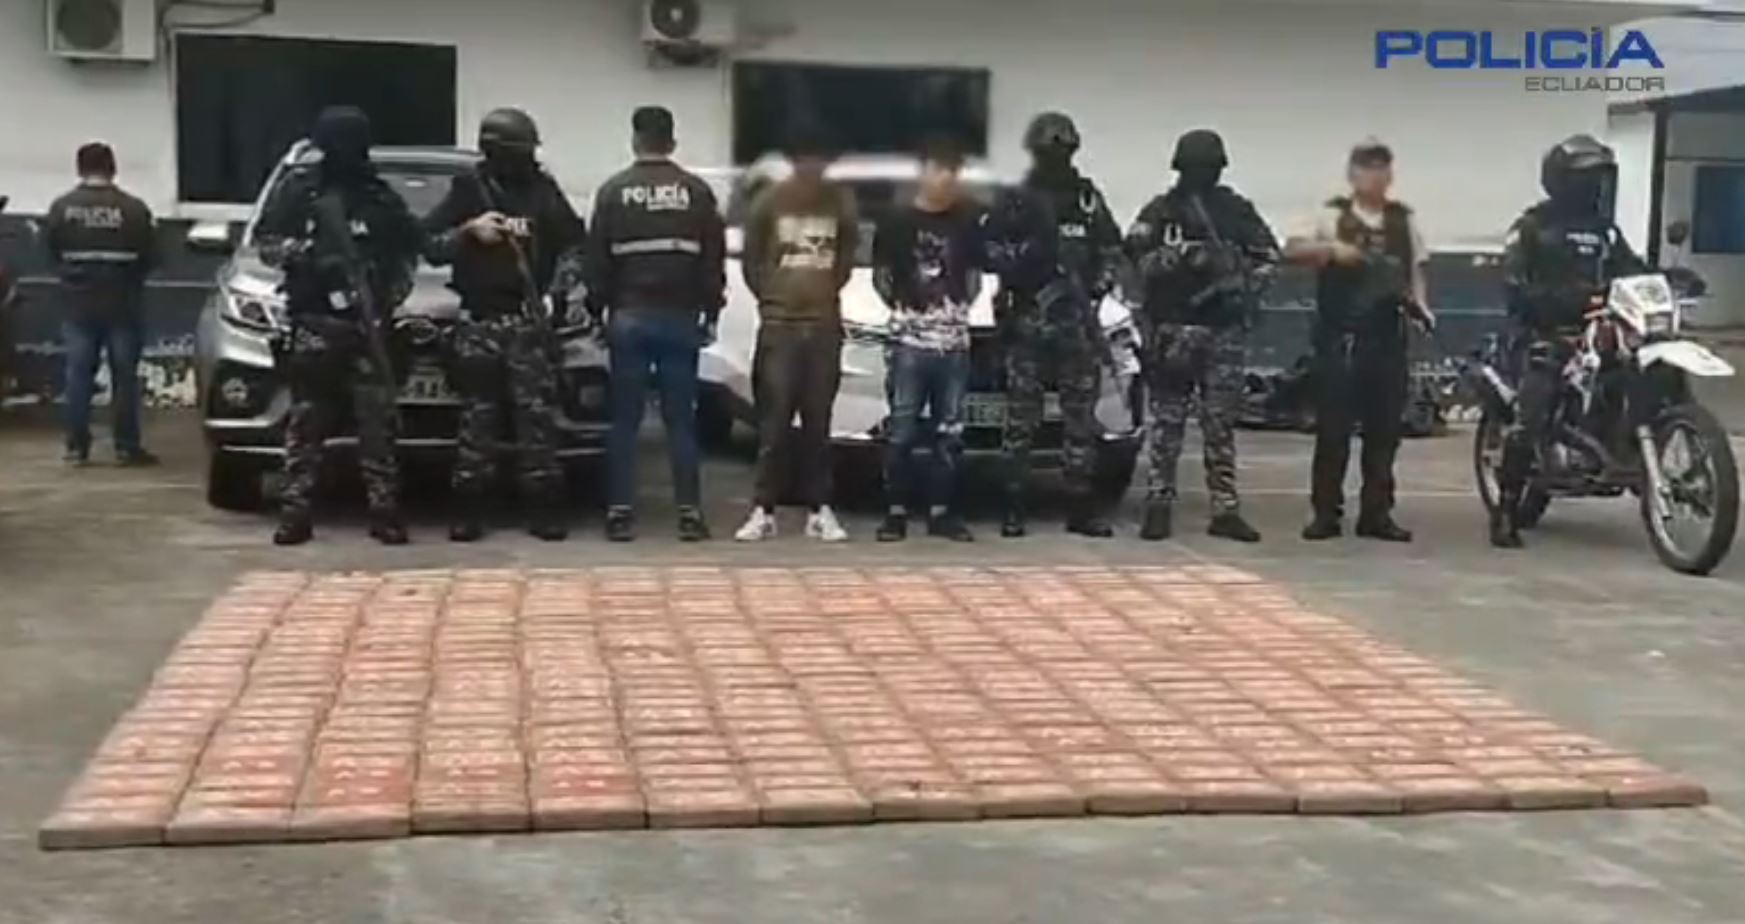 Autoriades de Ecuador informan sobre la incautación de un cargamento con aparente cocaína. (Foto Prensa Libre: Policía de Ecuador / X)